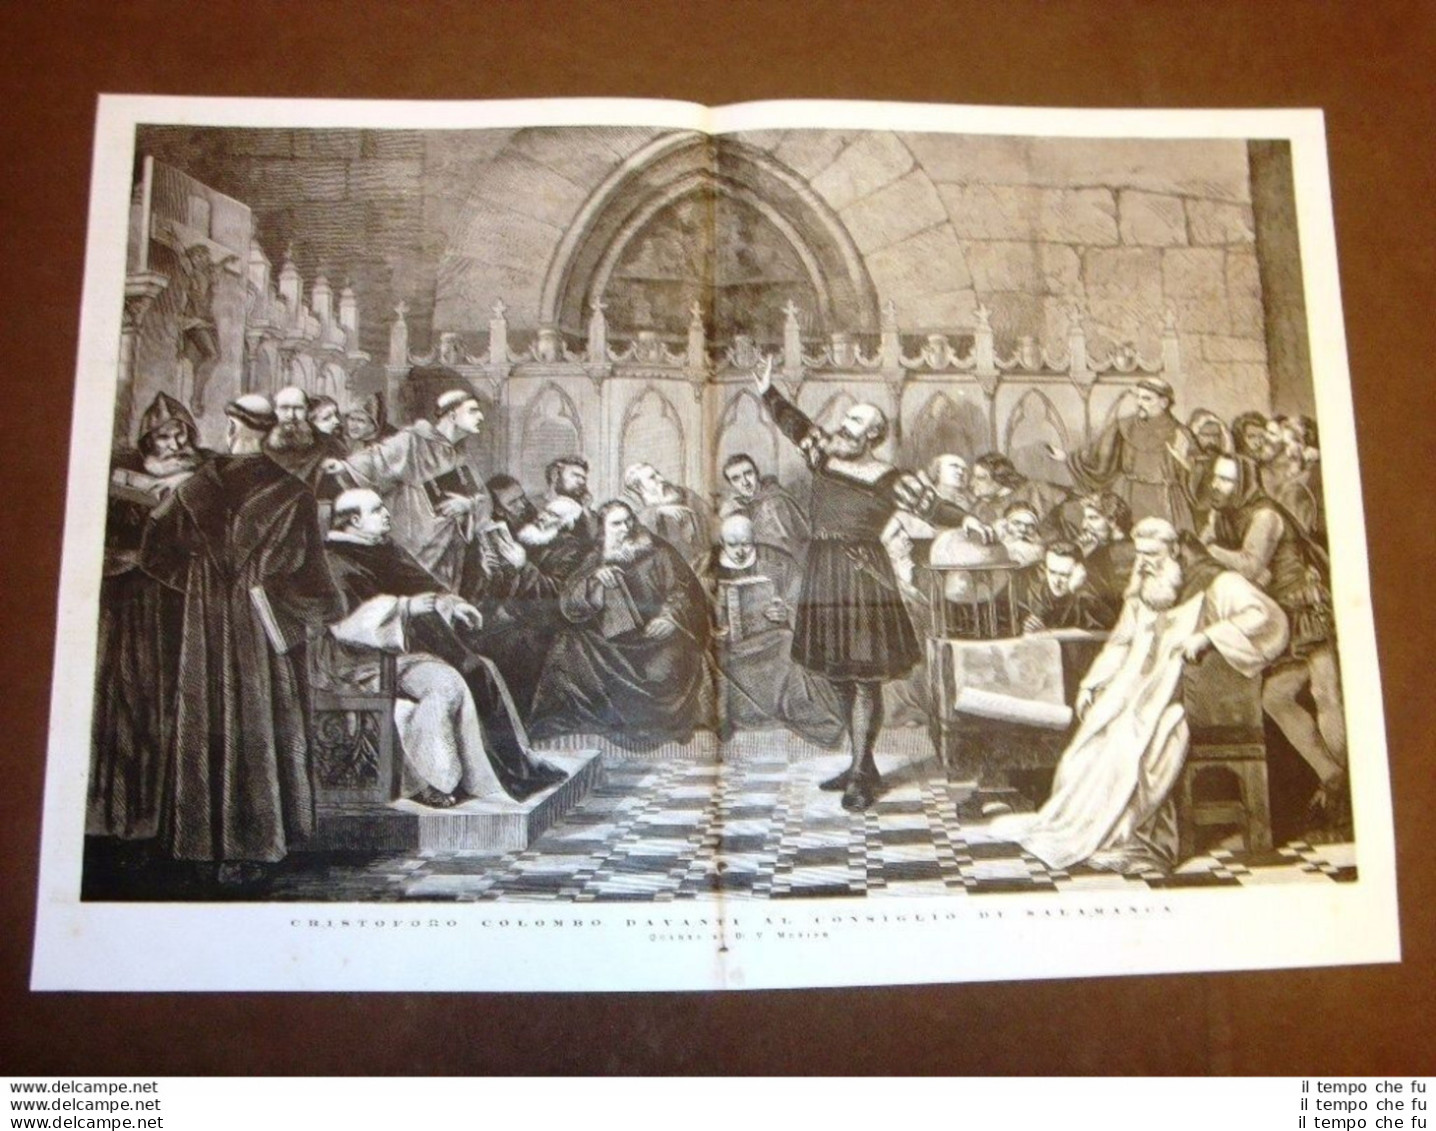 Incisione Enorme Cristoforo Colombo Innanzi Al Consiglio Di Salamanca V. Merino - Before 1900